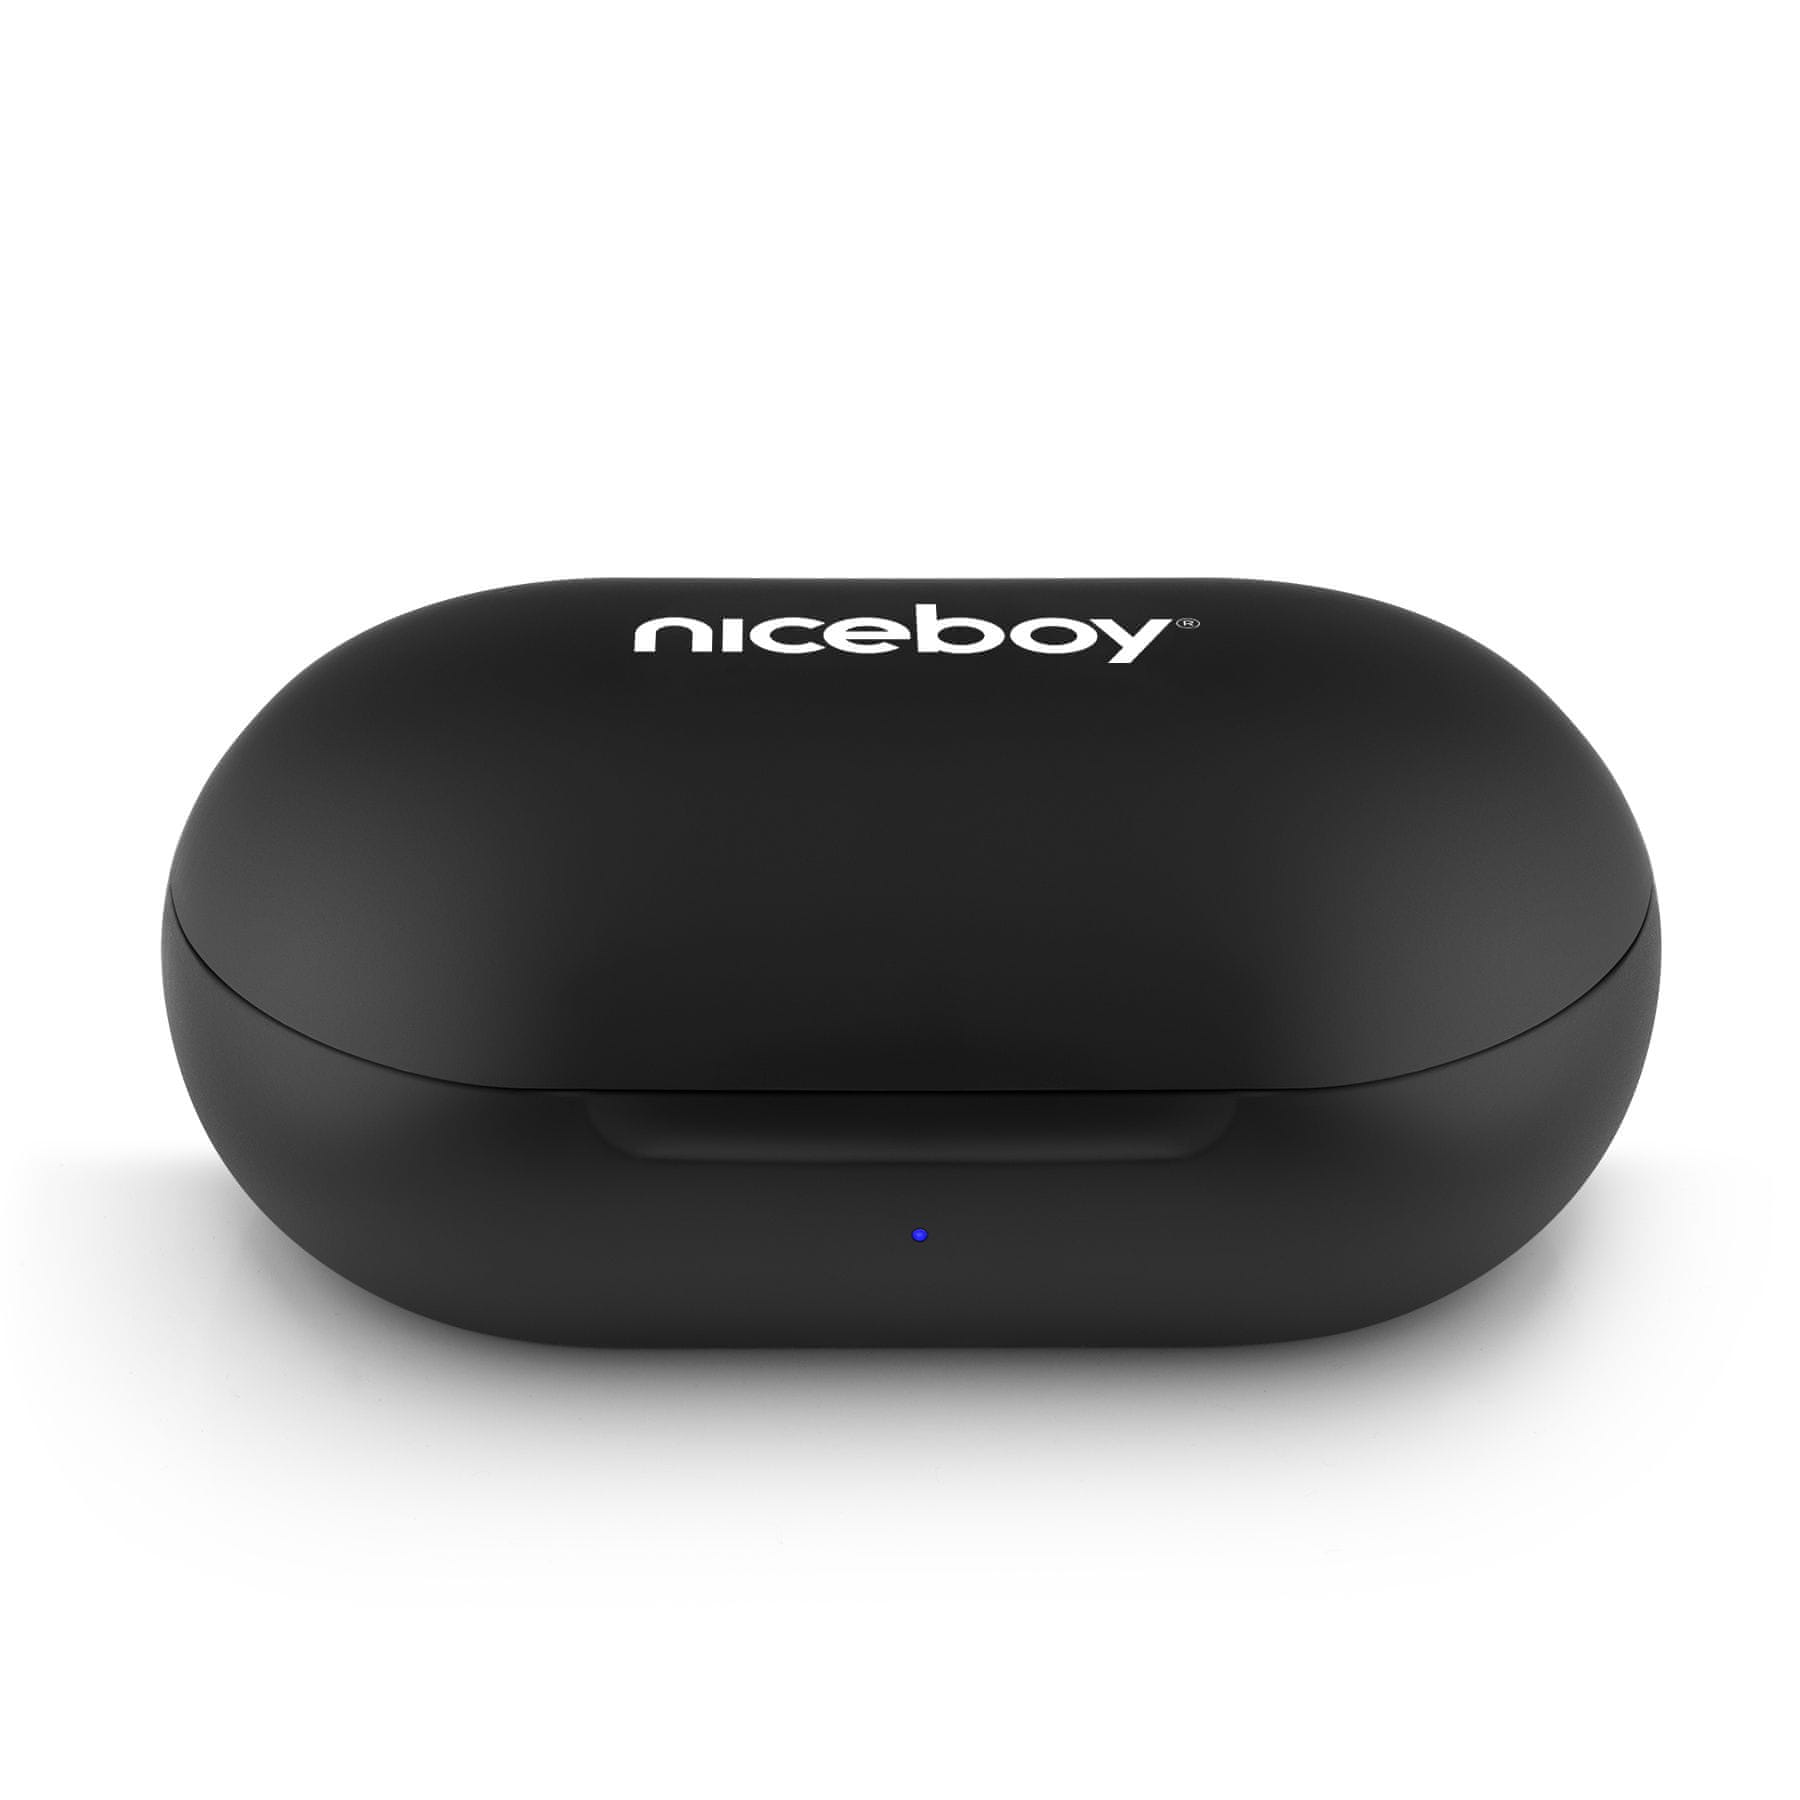  niceboy hive drops 3 bluetooth brezžična tehnologija aac kodek funkcija prostoročnega telefoniranja polnilno ohišje odpornost na vodo in znoj nadzor aplikacij poišči slušalke 